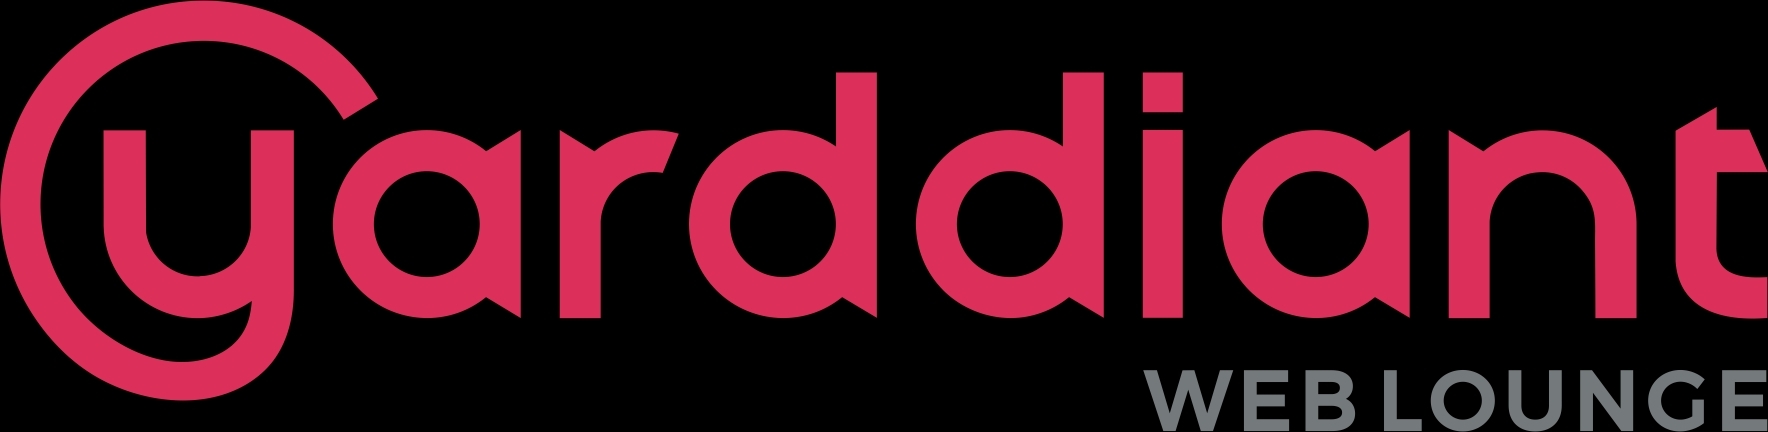 Yarddiant-logo